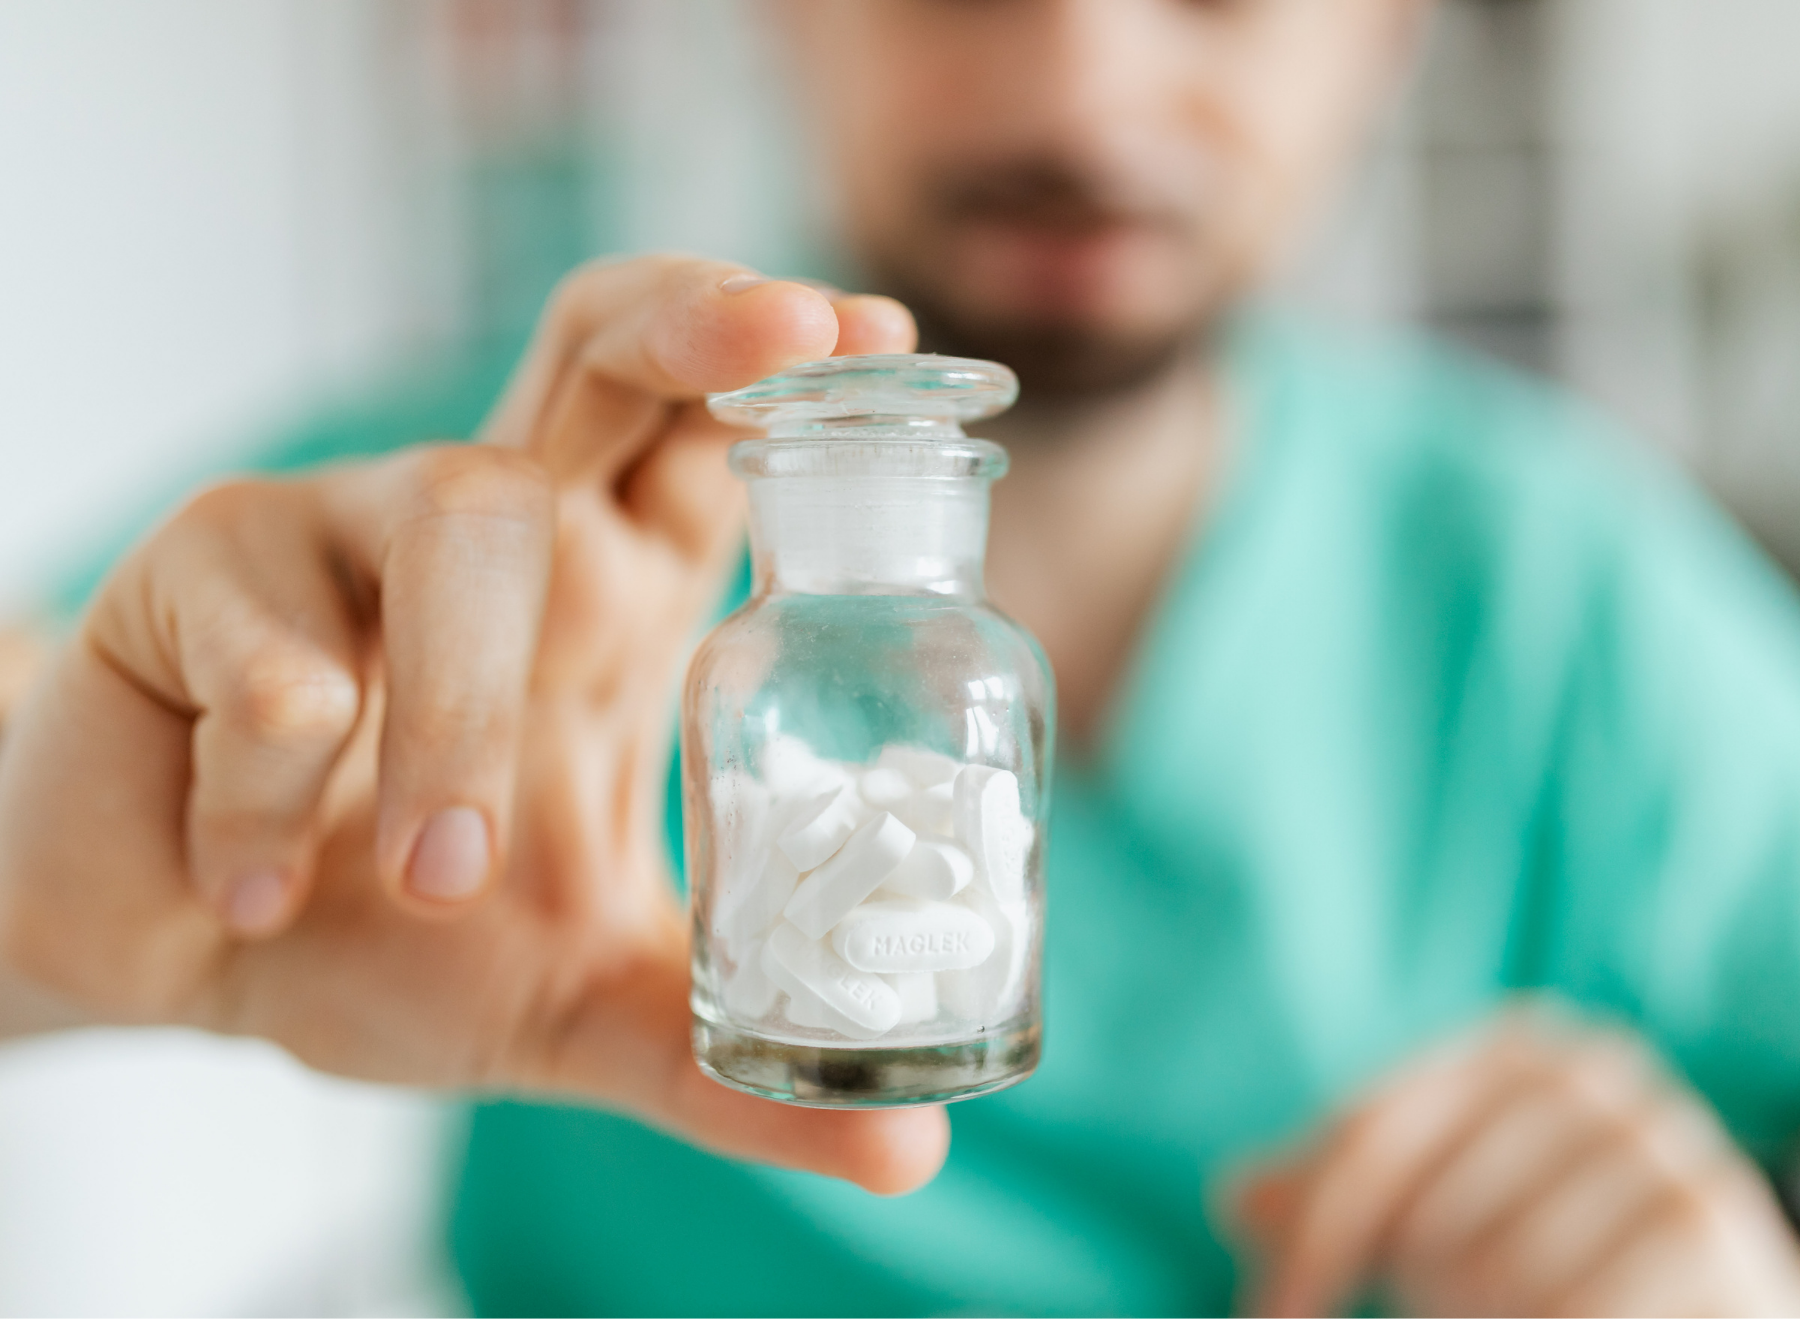 pharmacist holds up bottle of medications